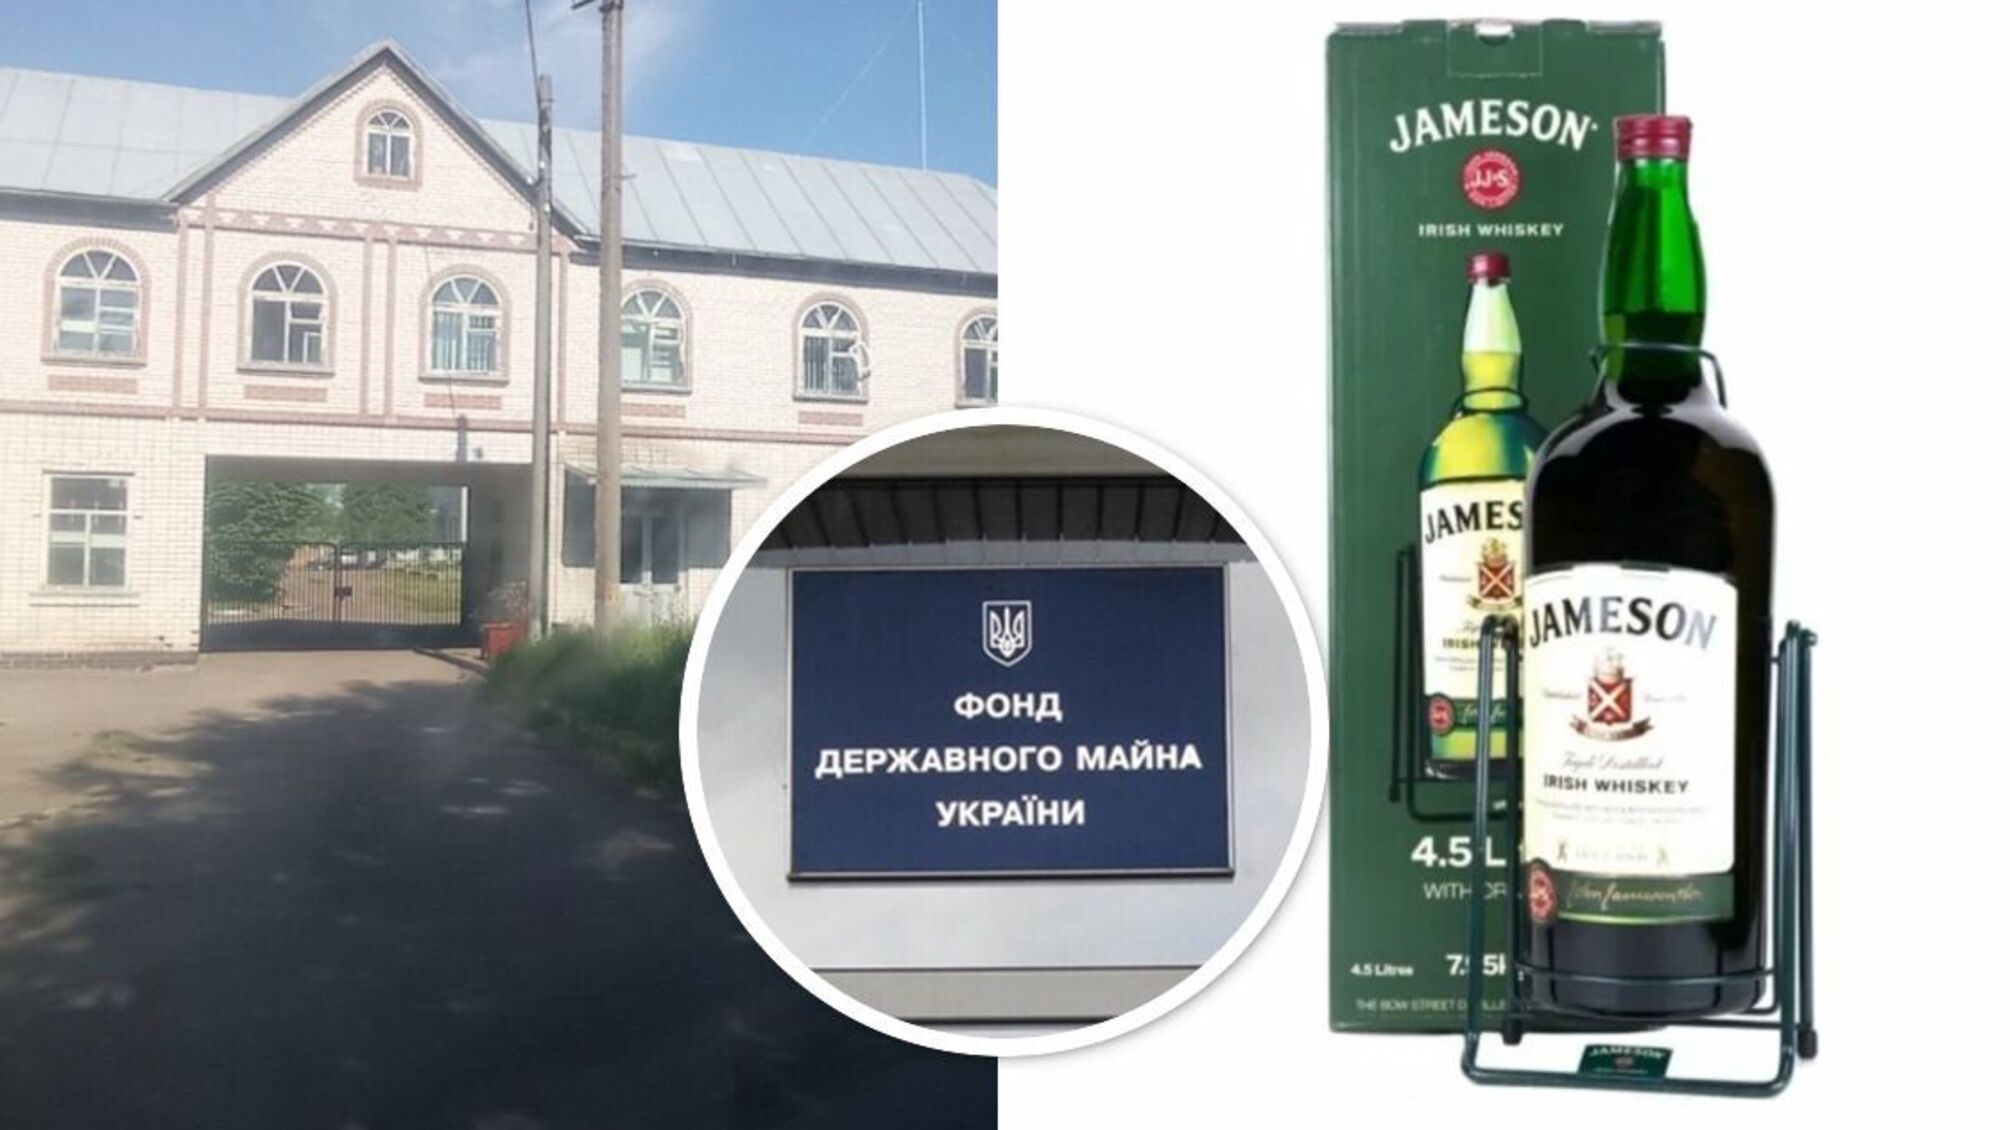 Спиртзавод по цене бутылки виски: на Киевщине предприятие пустили с молотка за 176 долларов?